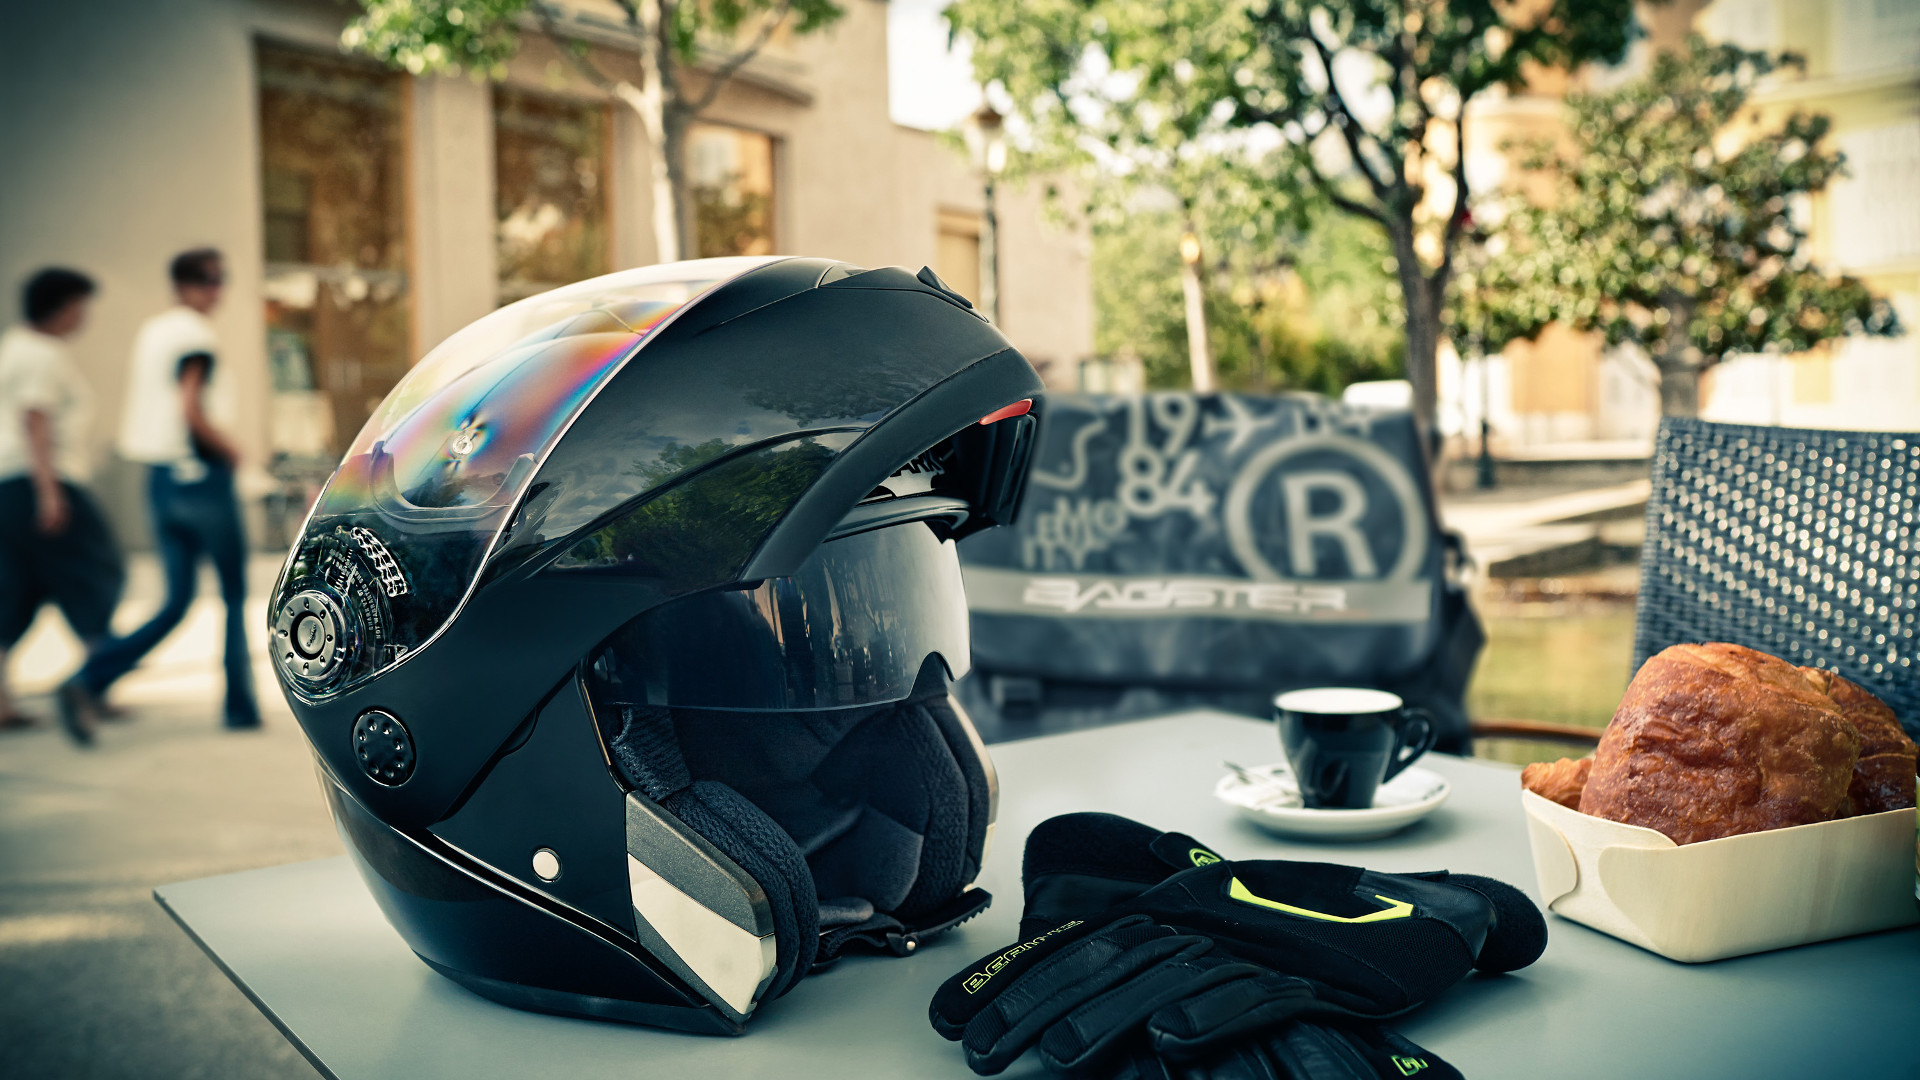 Renting a helmet - Cycle Visions Motorcycle Rentals - San Diego's